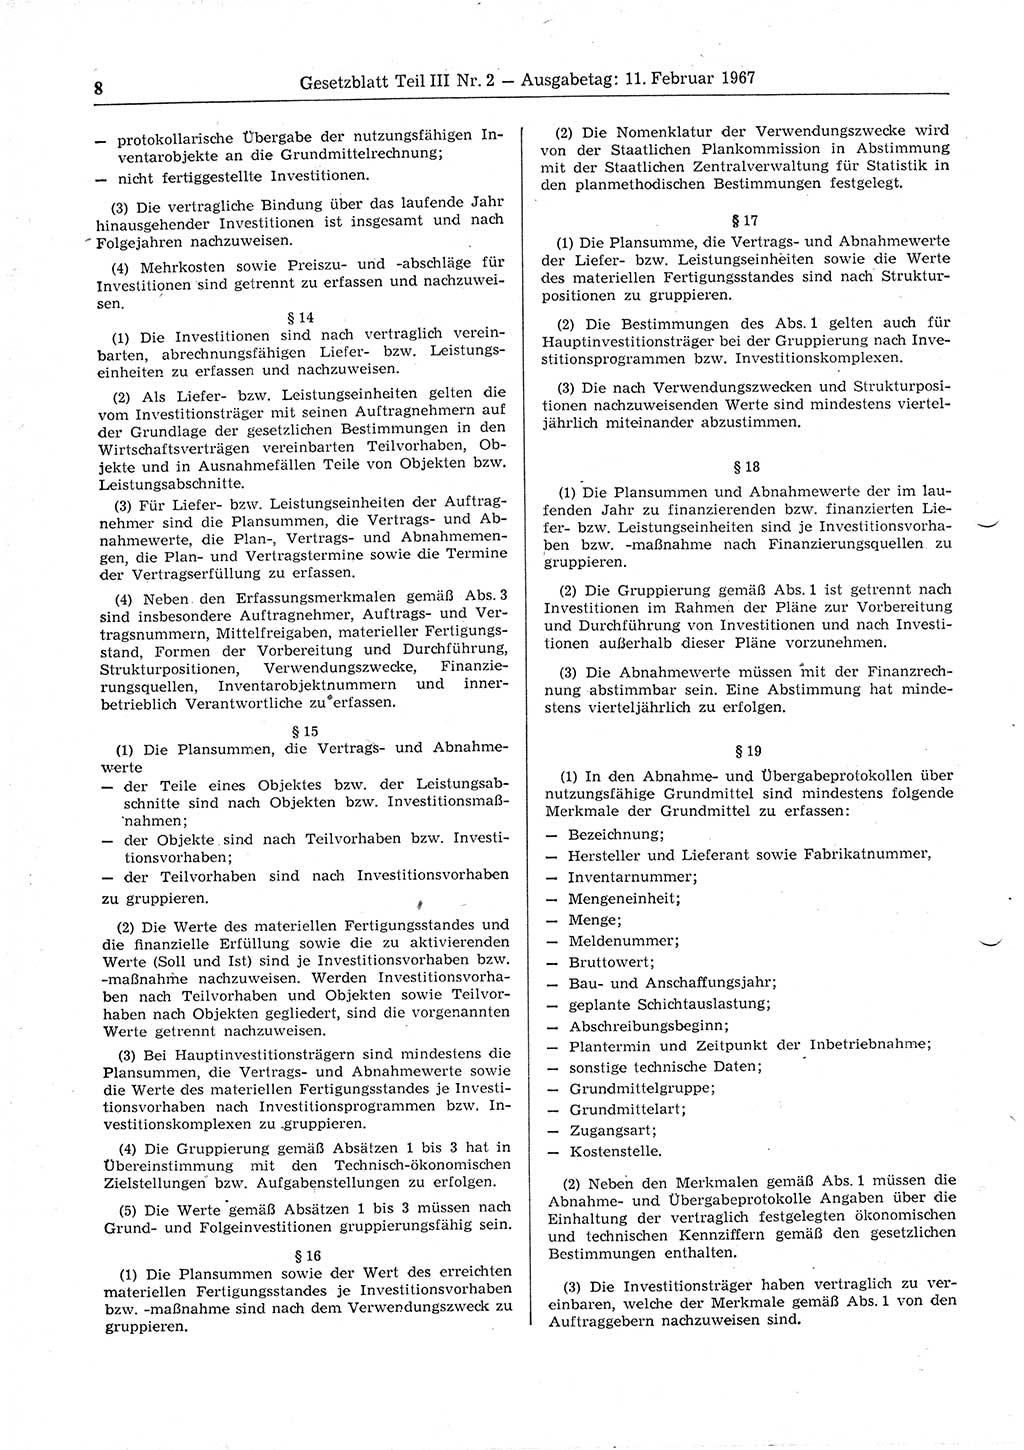 Gesetzblatt (GBl.) der Deutschen Demokratischen Republik (DDR) Teil ⅠⅠⅠ 1967, Seite 8 (GBl. DDR ⅠⅠⅠ 1967, S. 8)